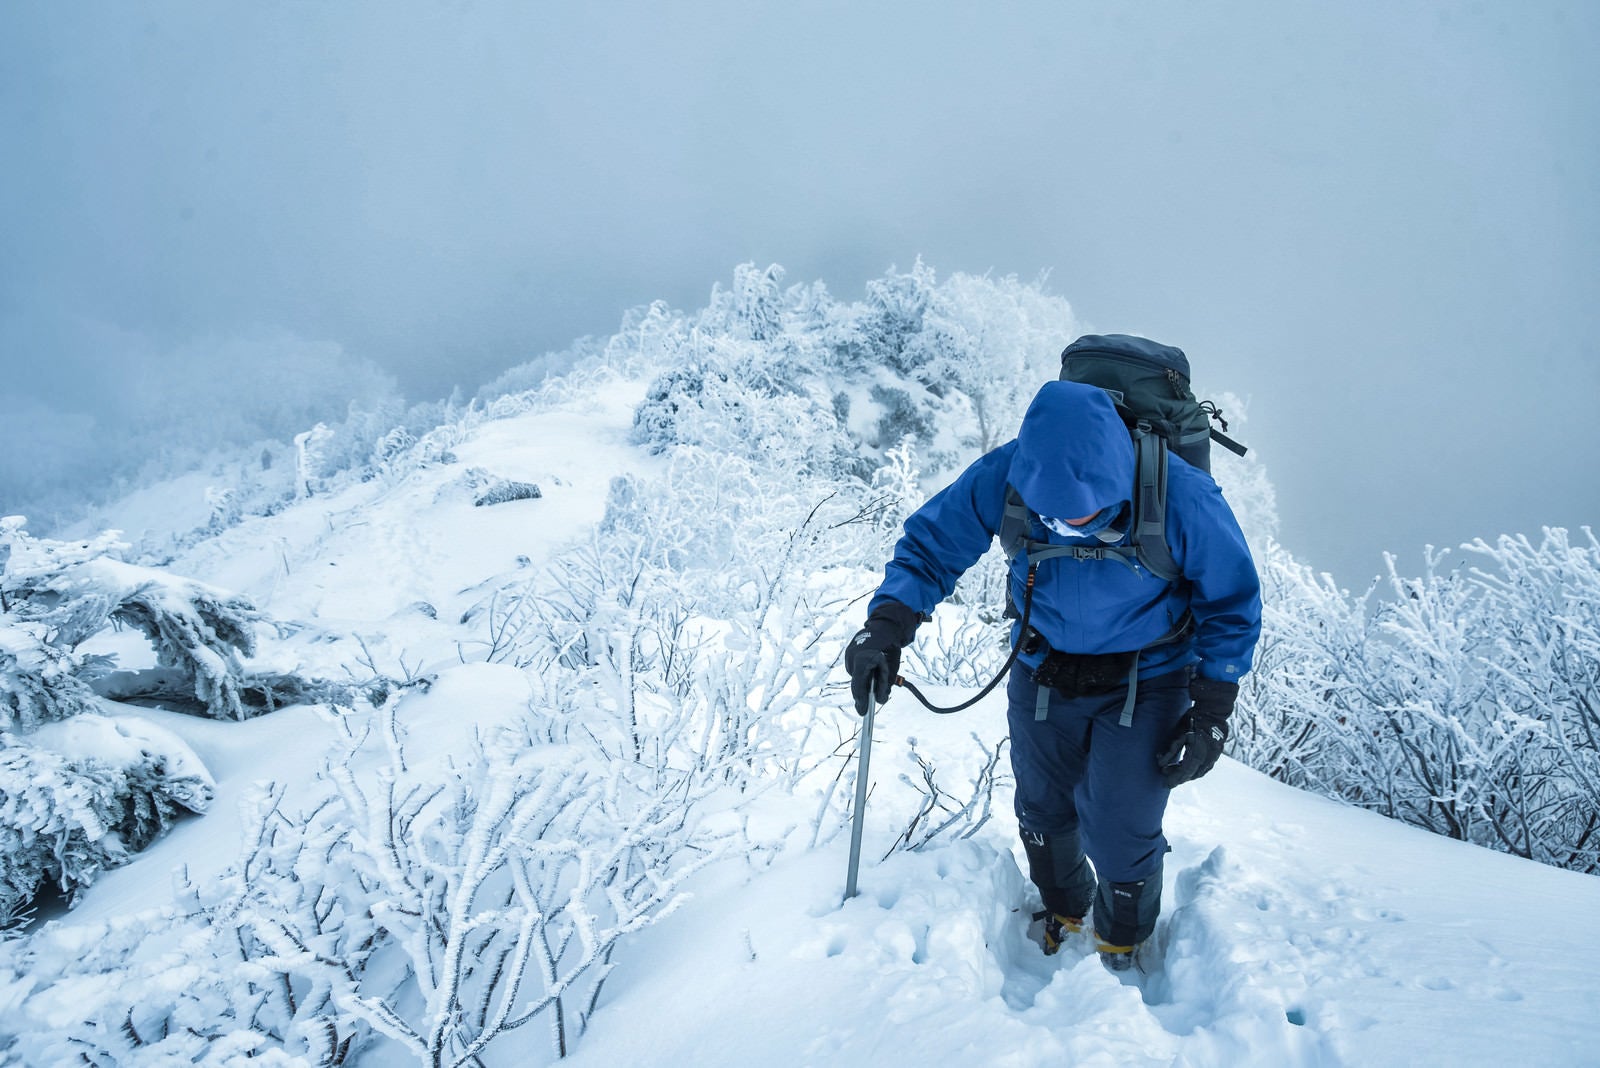 「雪深い登山道で山頂を目指す登山者」の写真